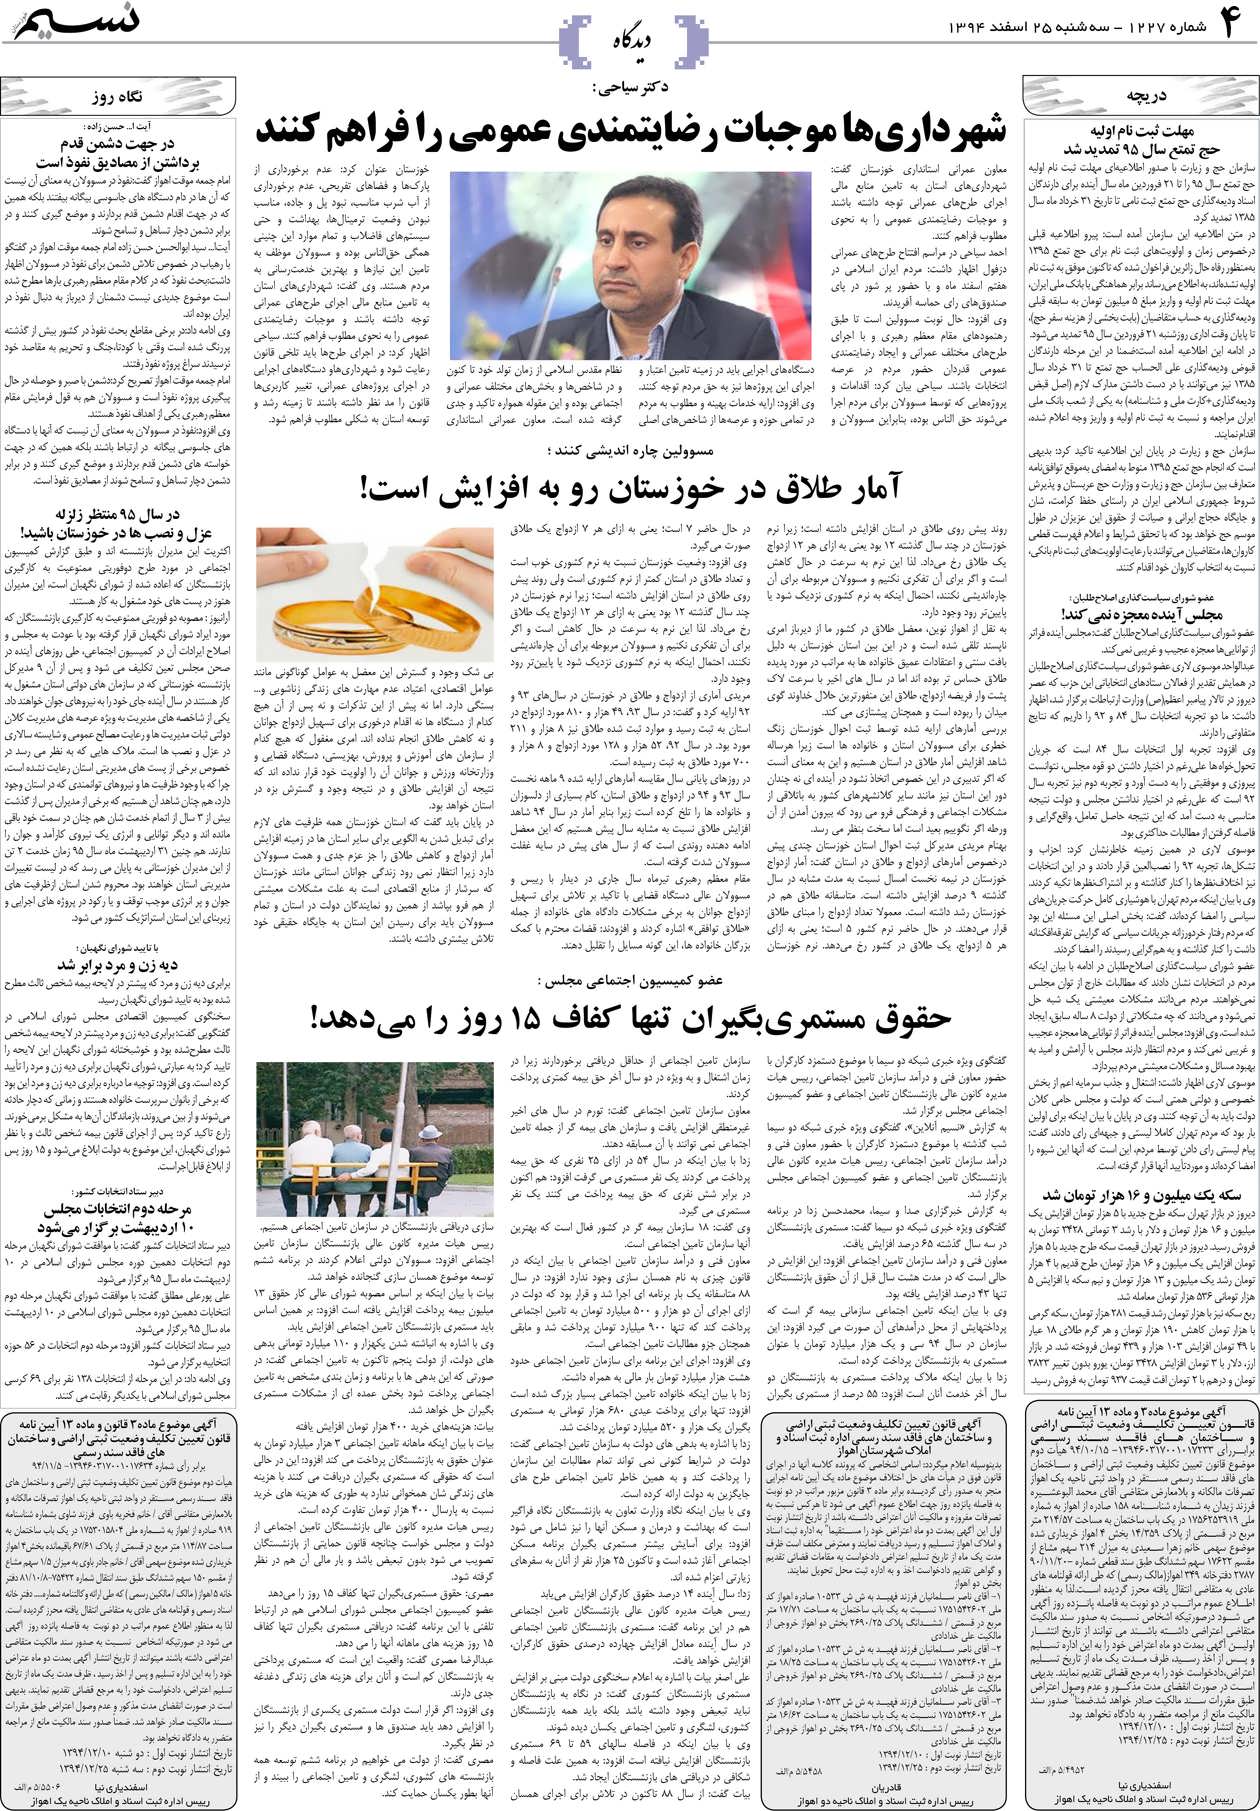 صفحه دیدگاه روزنامه نسیم شماره 1227